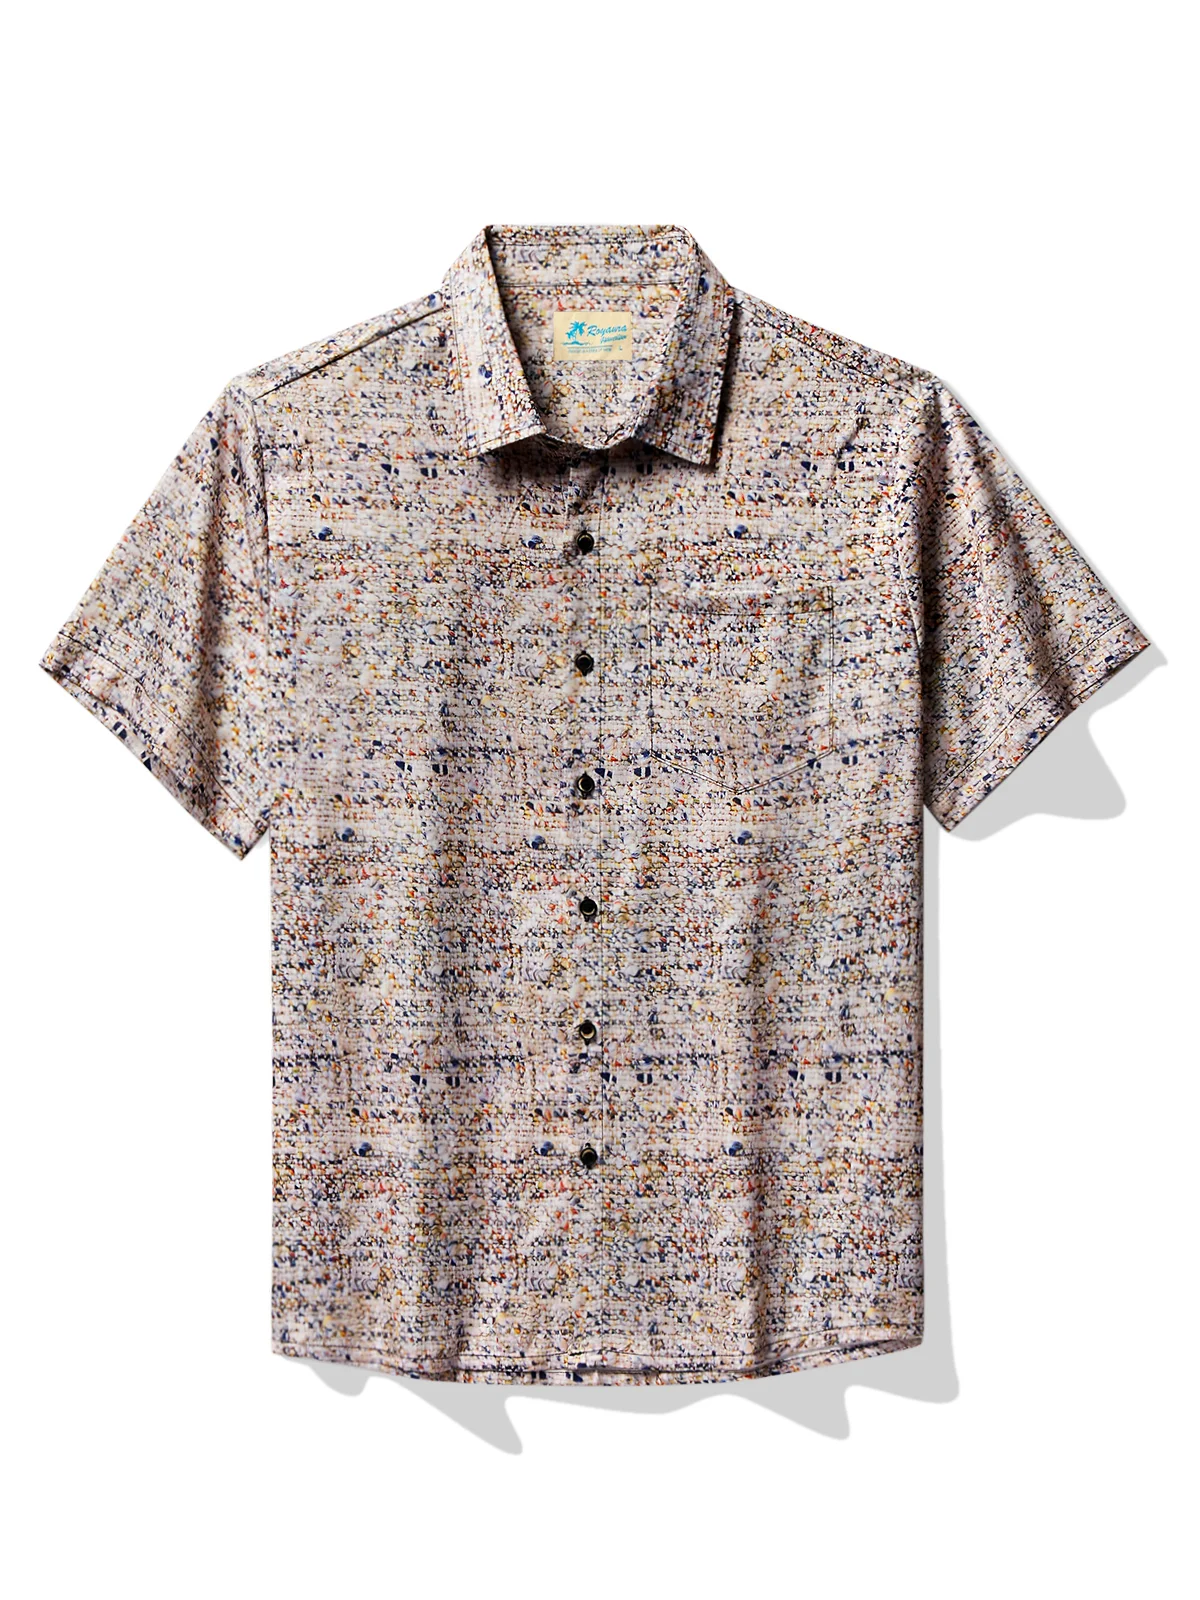 Royaura® Retro Abstract Texture Men's Hawaiian Shirt Breathable Comfortable Camp Pocket Shirt